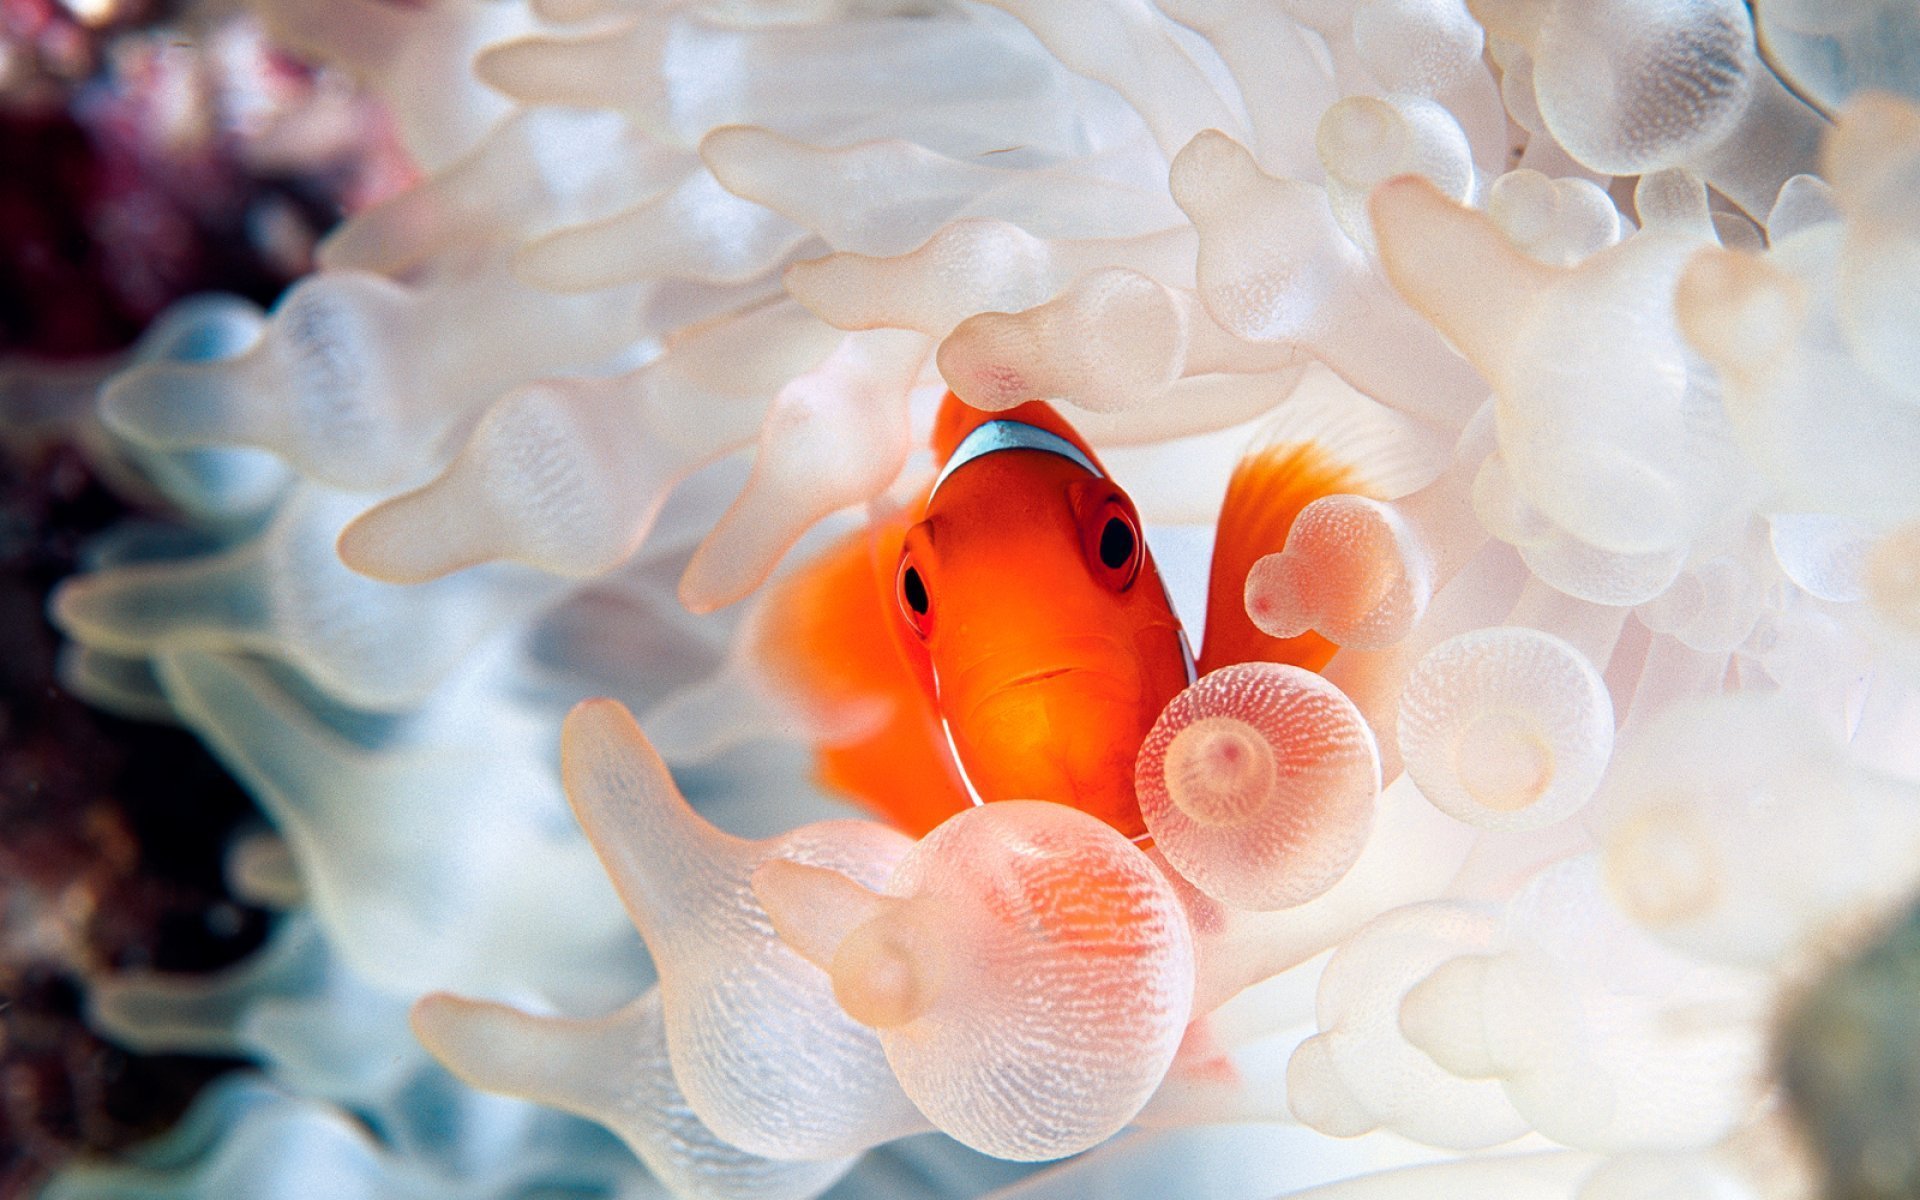 Обои на стол рыбки. Коралловая рыбка клоун. Золотая рыбка пузыреглаз. Жители моря. Кораллы с рыбками.